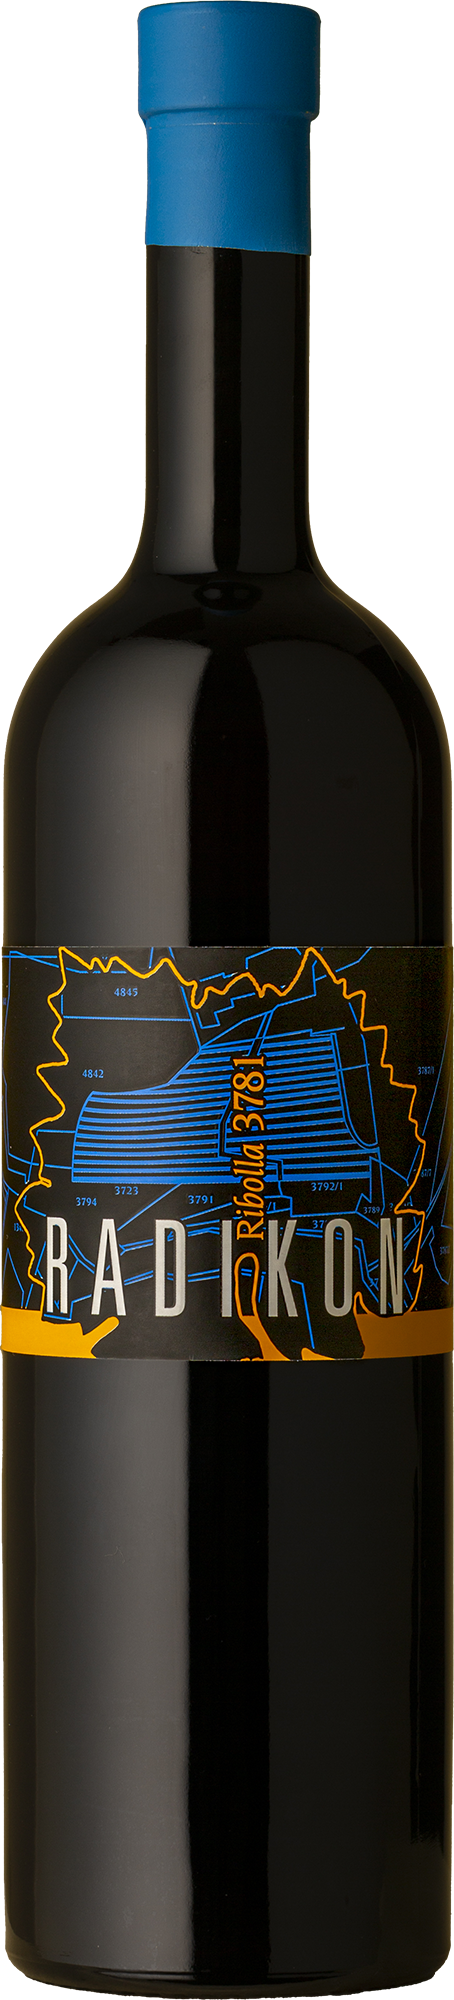 Radikon - Ribolla Riserva 3781 Ribolla Giallo 500mL 2007 Orange Wine